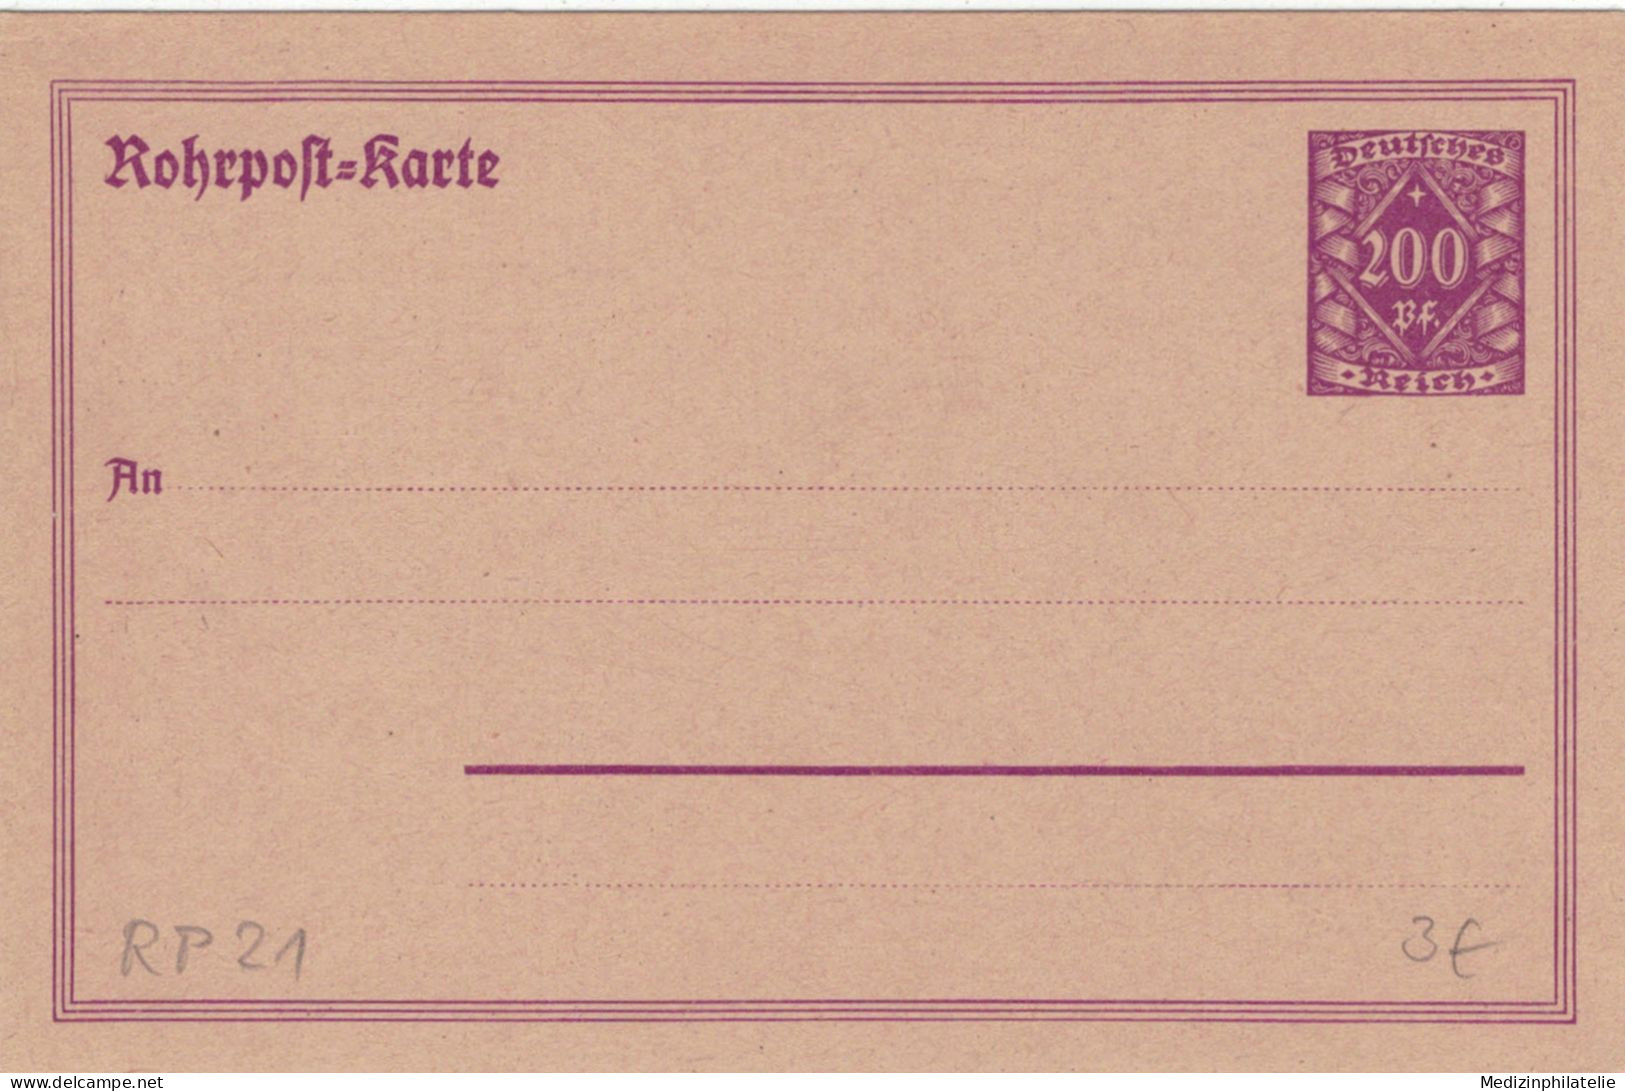 Rohrpost-Karte 200 Pf. Grosse Wertziffer In Raute - Ungebraucht - Cartes Postales